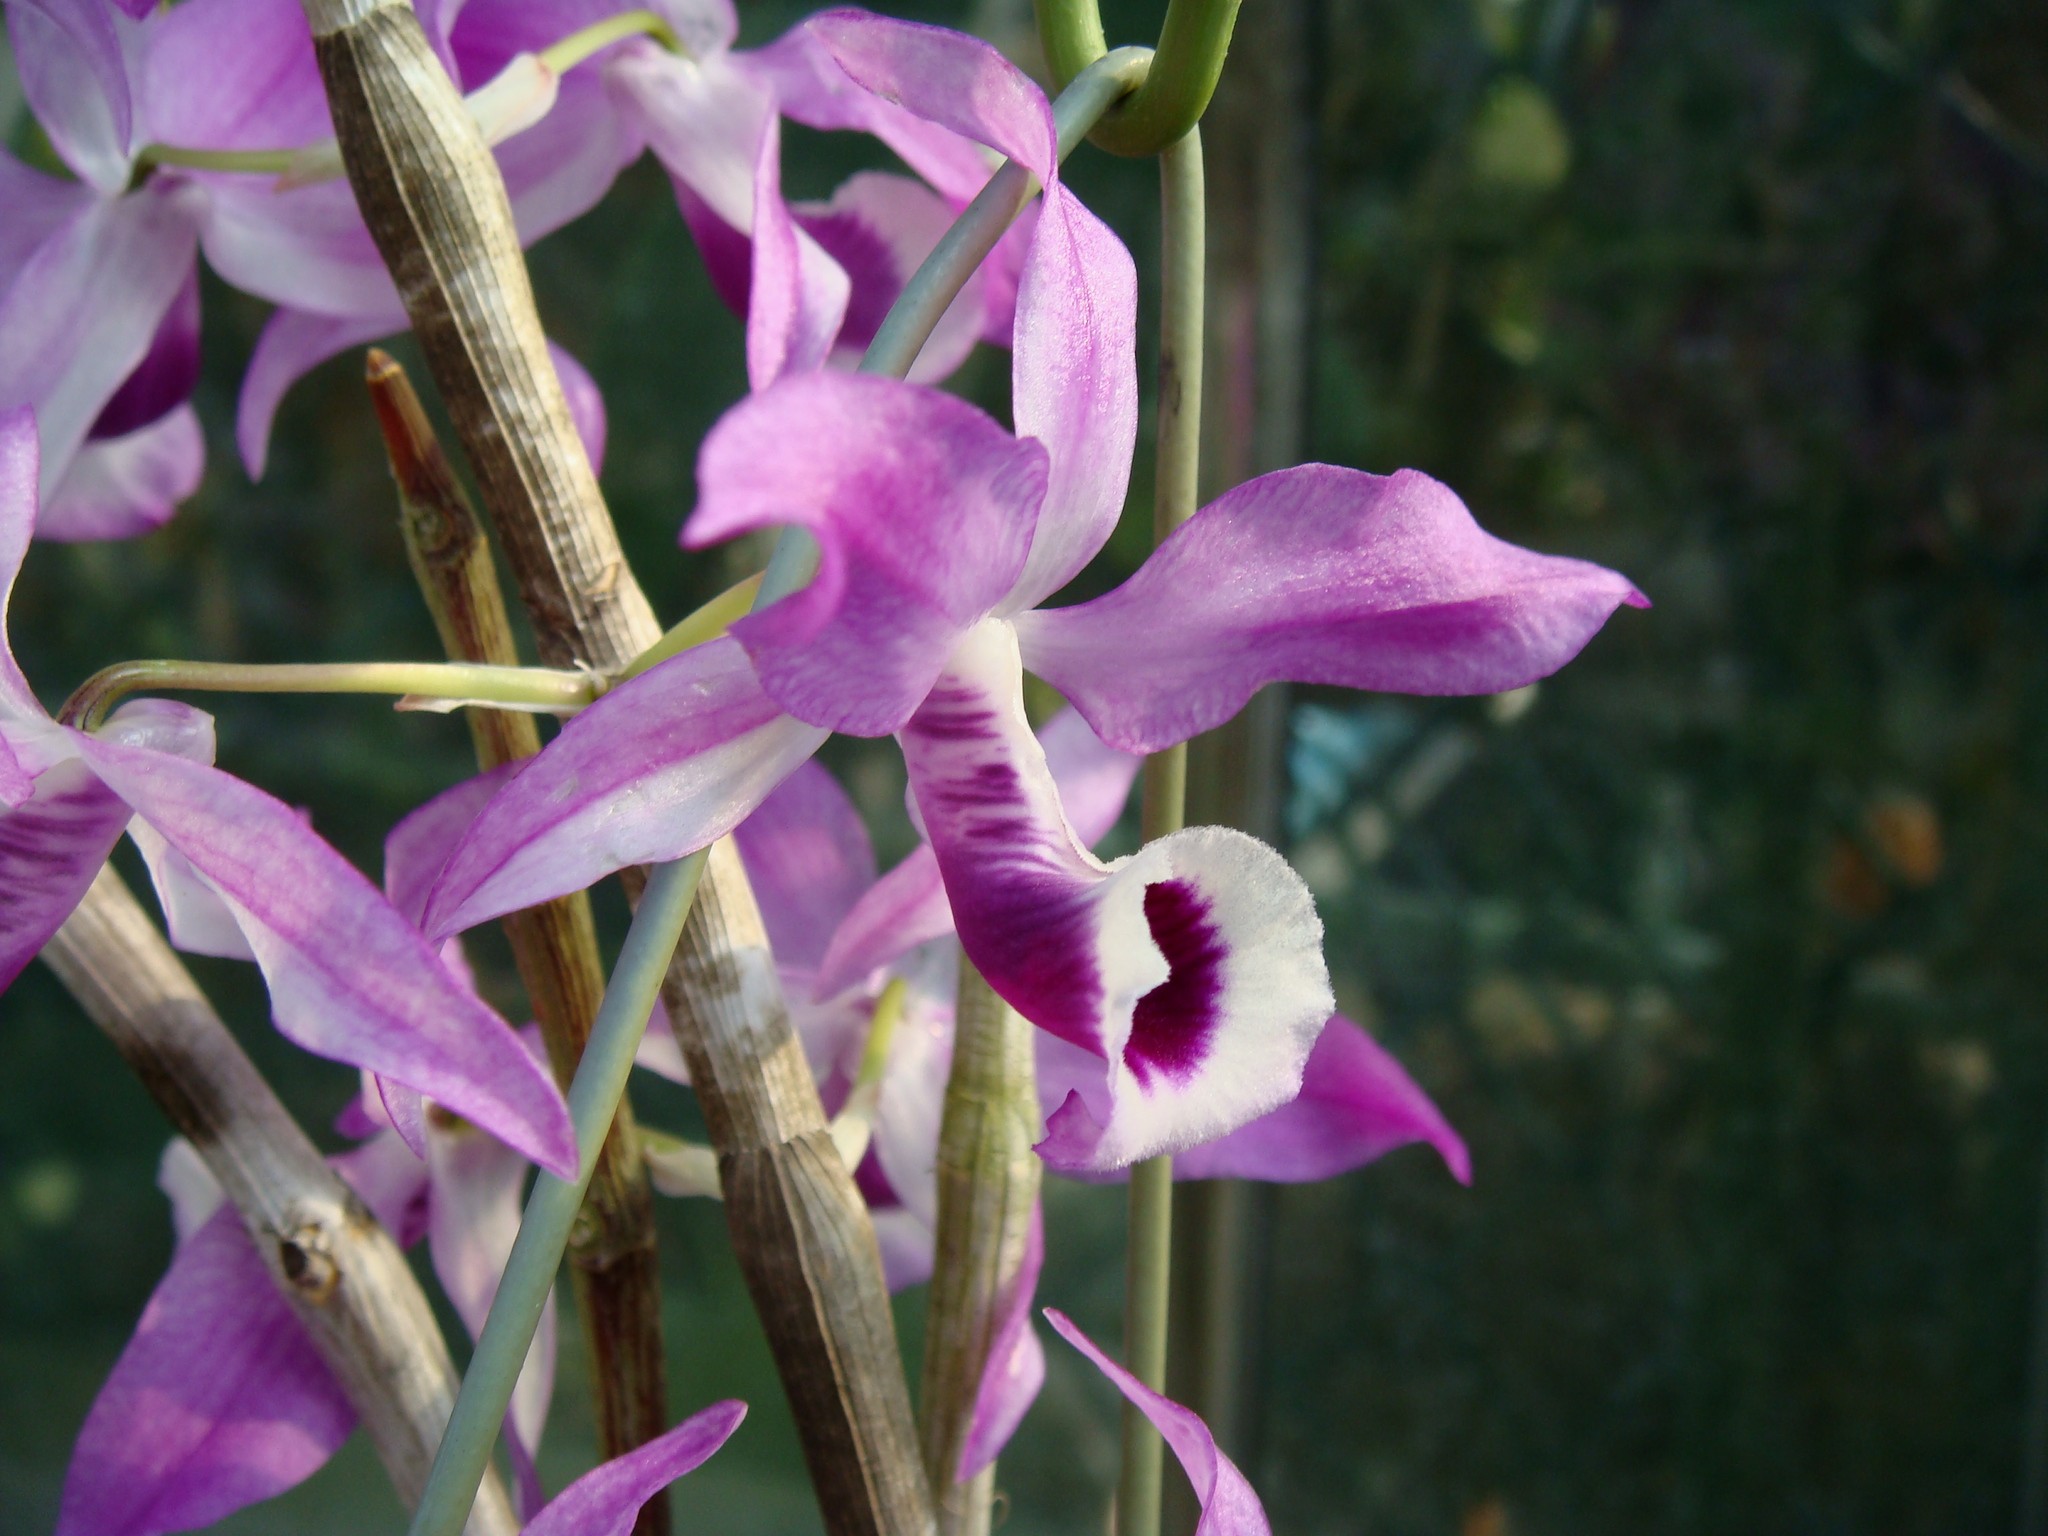 http://orchids.la.coocan.jp/Dendrobium/Dendrobium%20lituiflorum/DSC01901.JPG